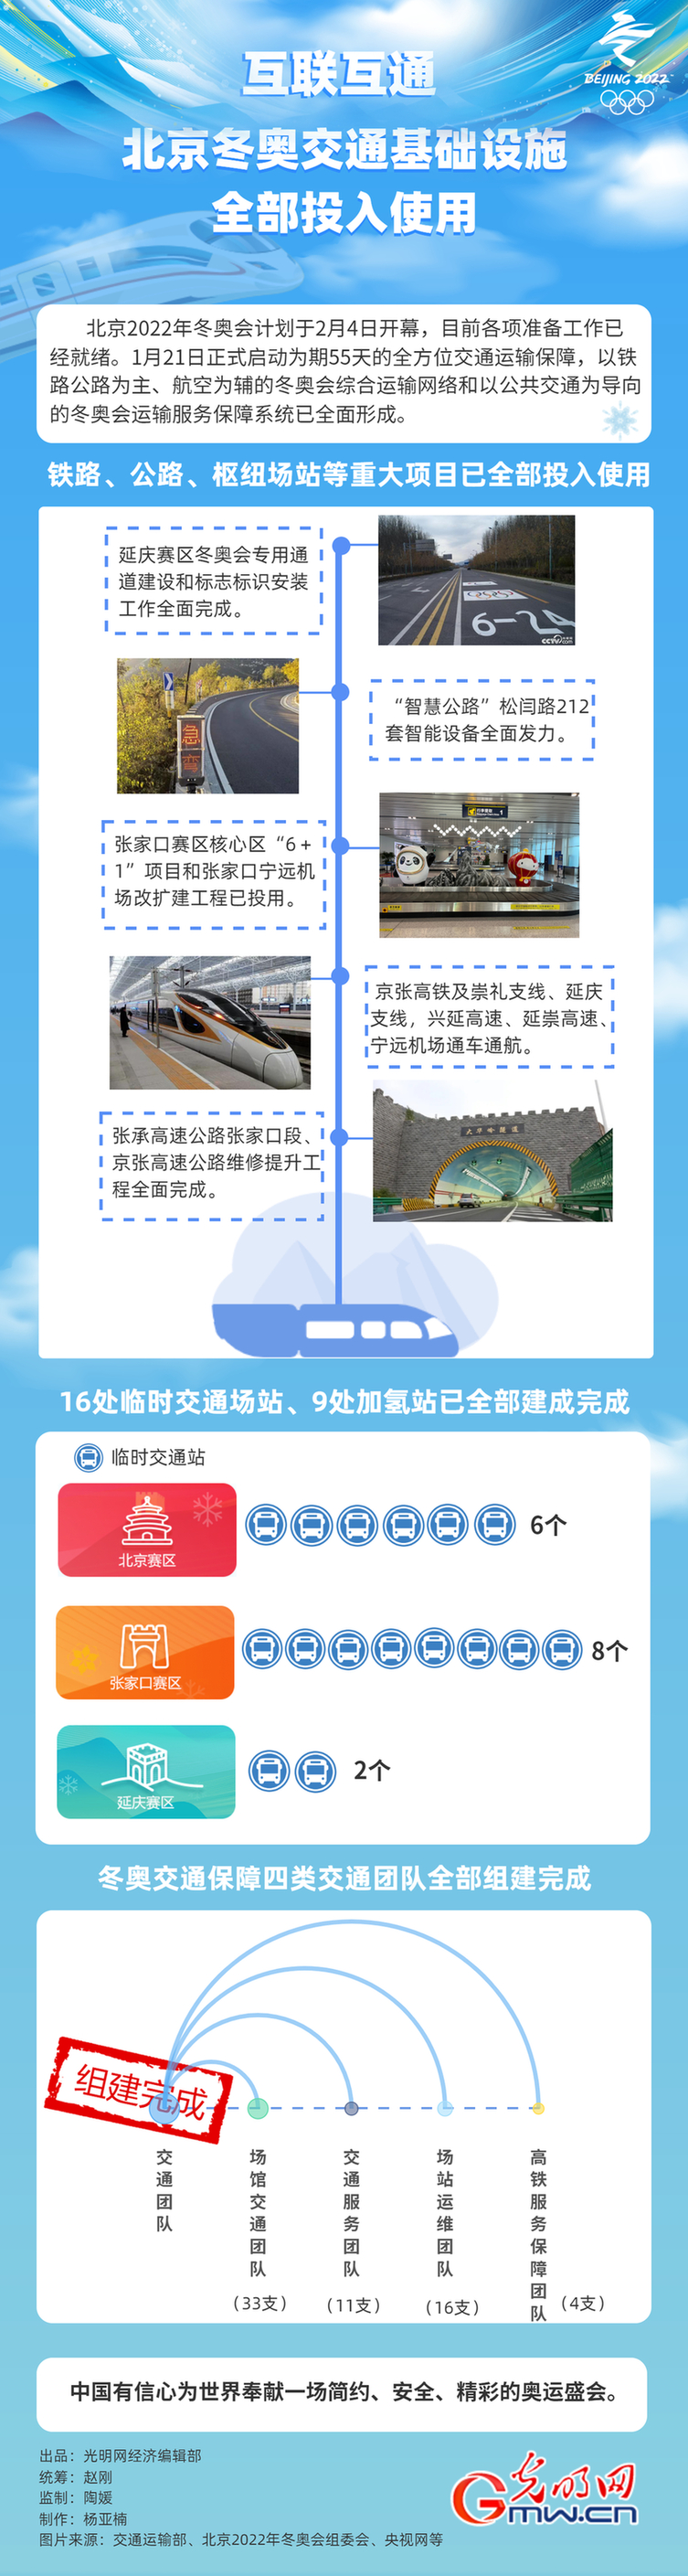 互联互通 北京冬奥交通基础设施全部投入使用